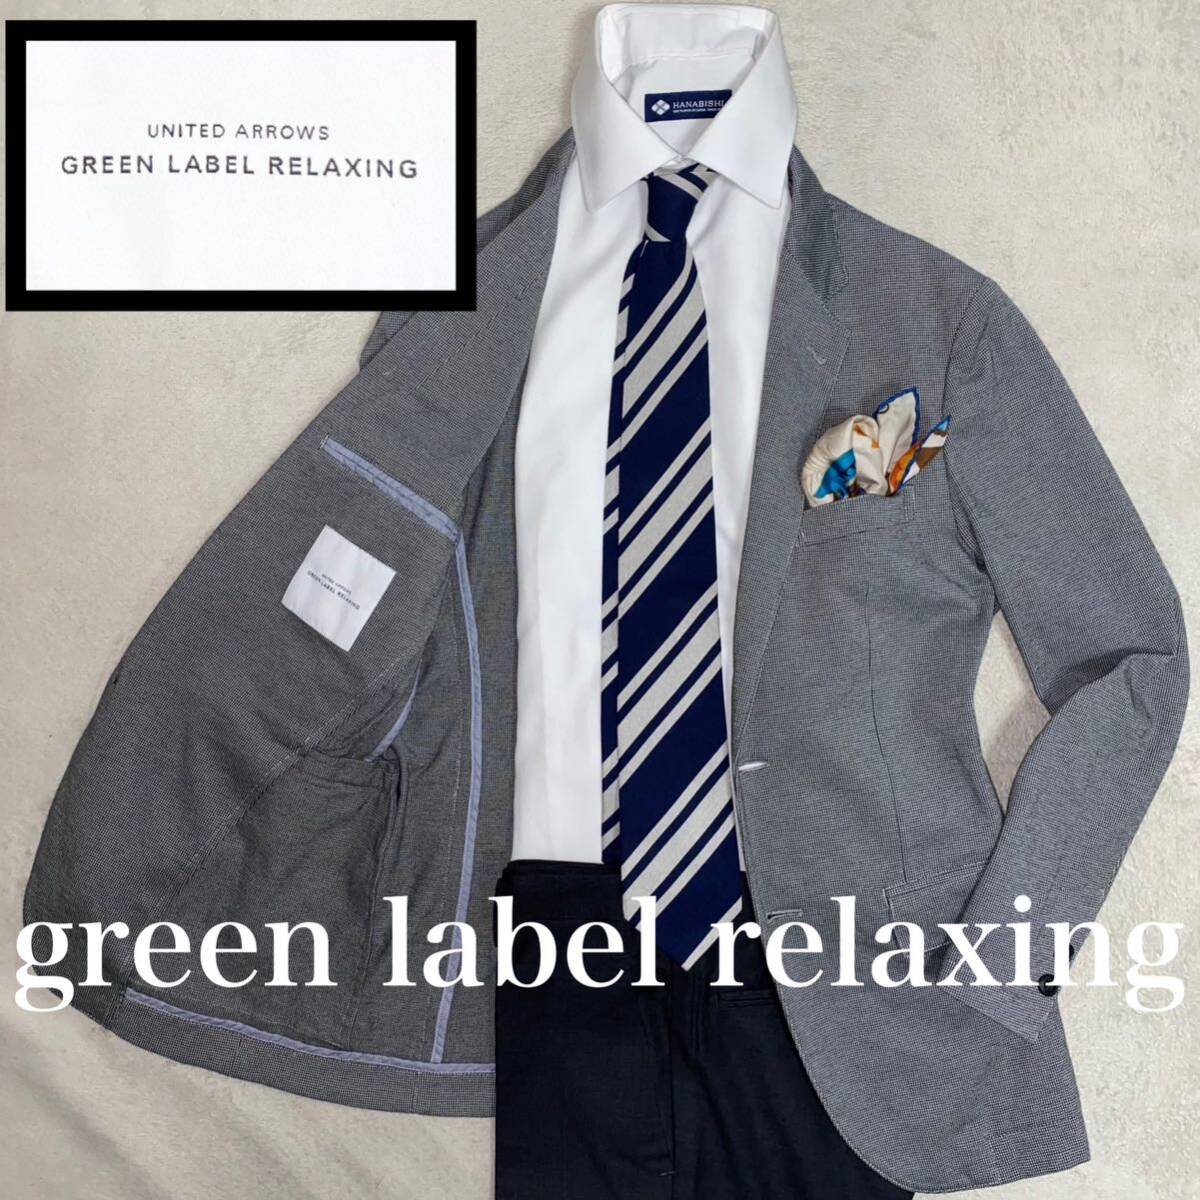 green label relaxing 未使用に近い美品 S オンオフ兼用 テーラード ナチュラルストレッチの画像1